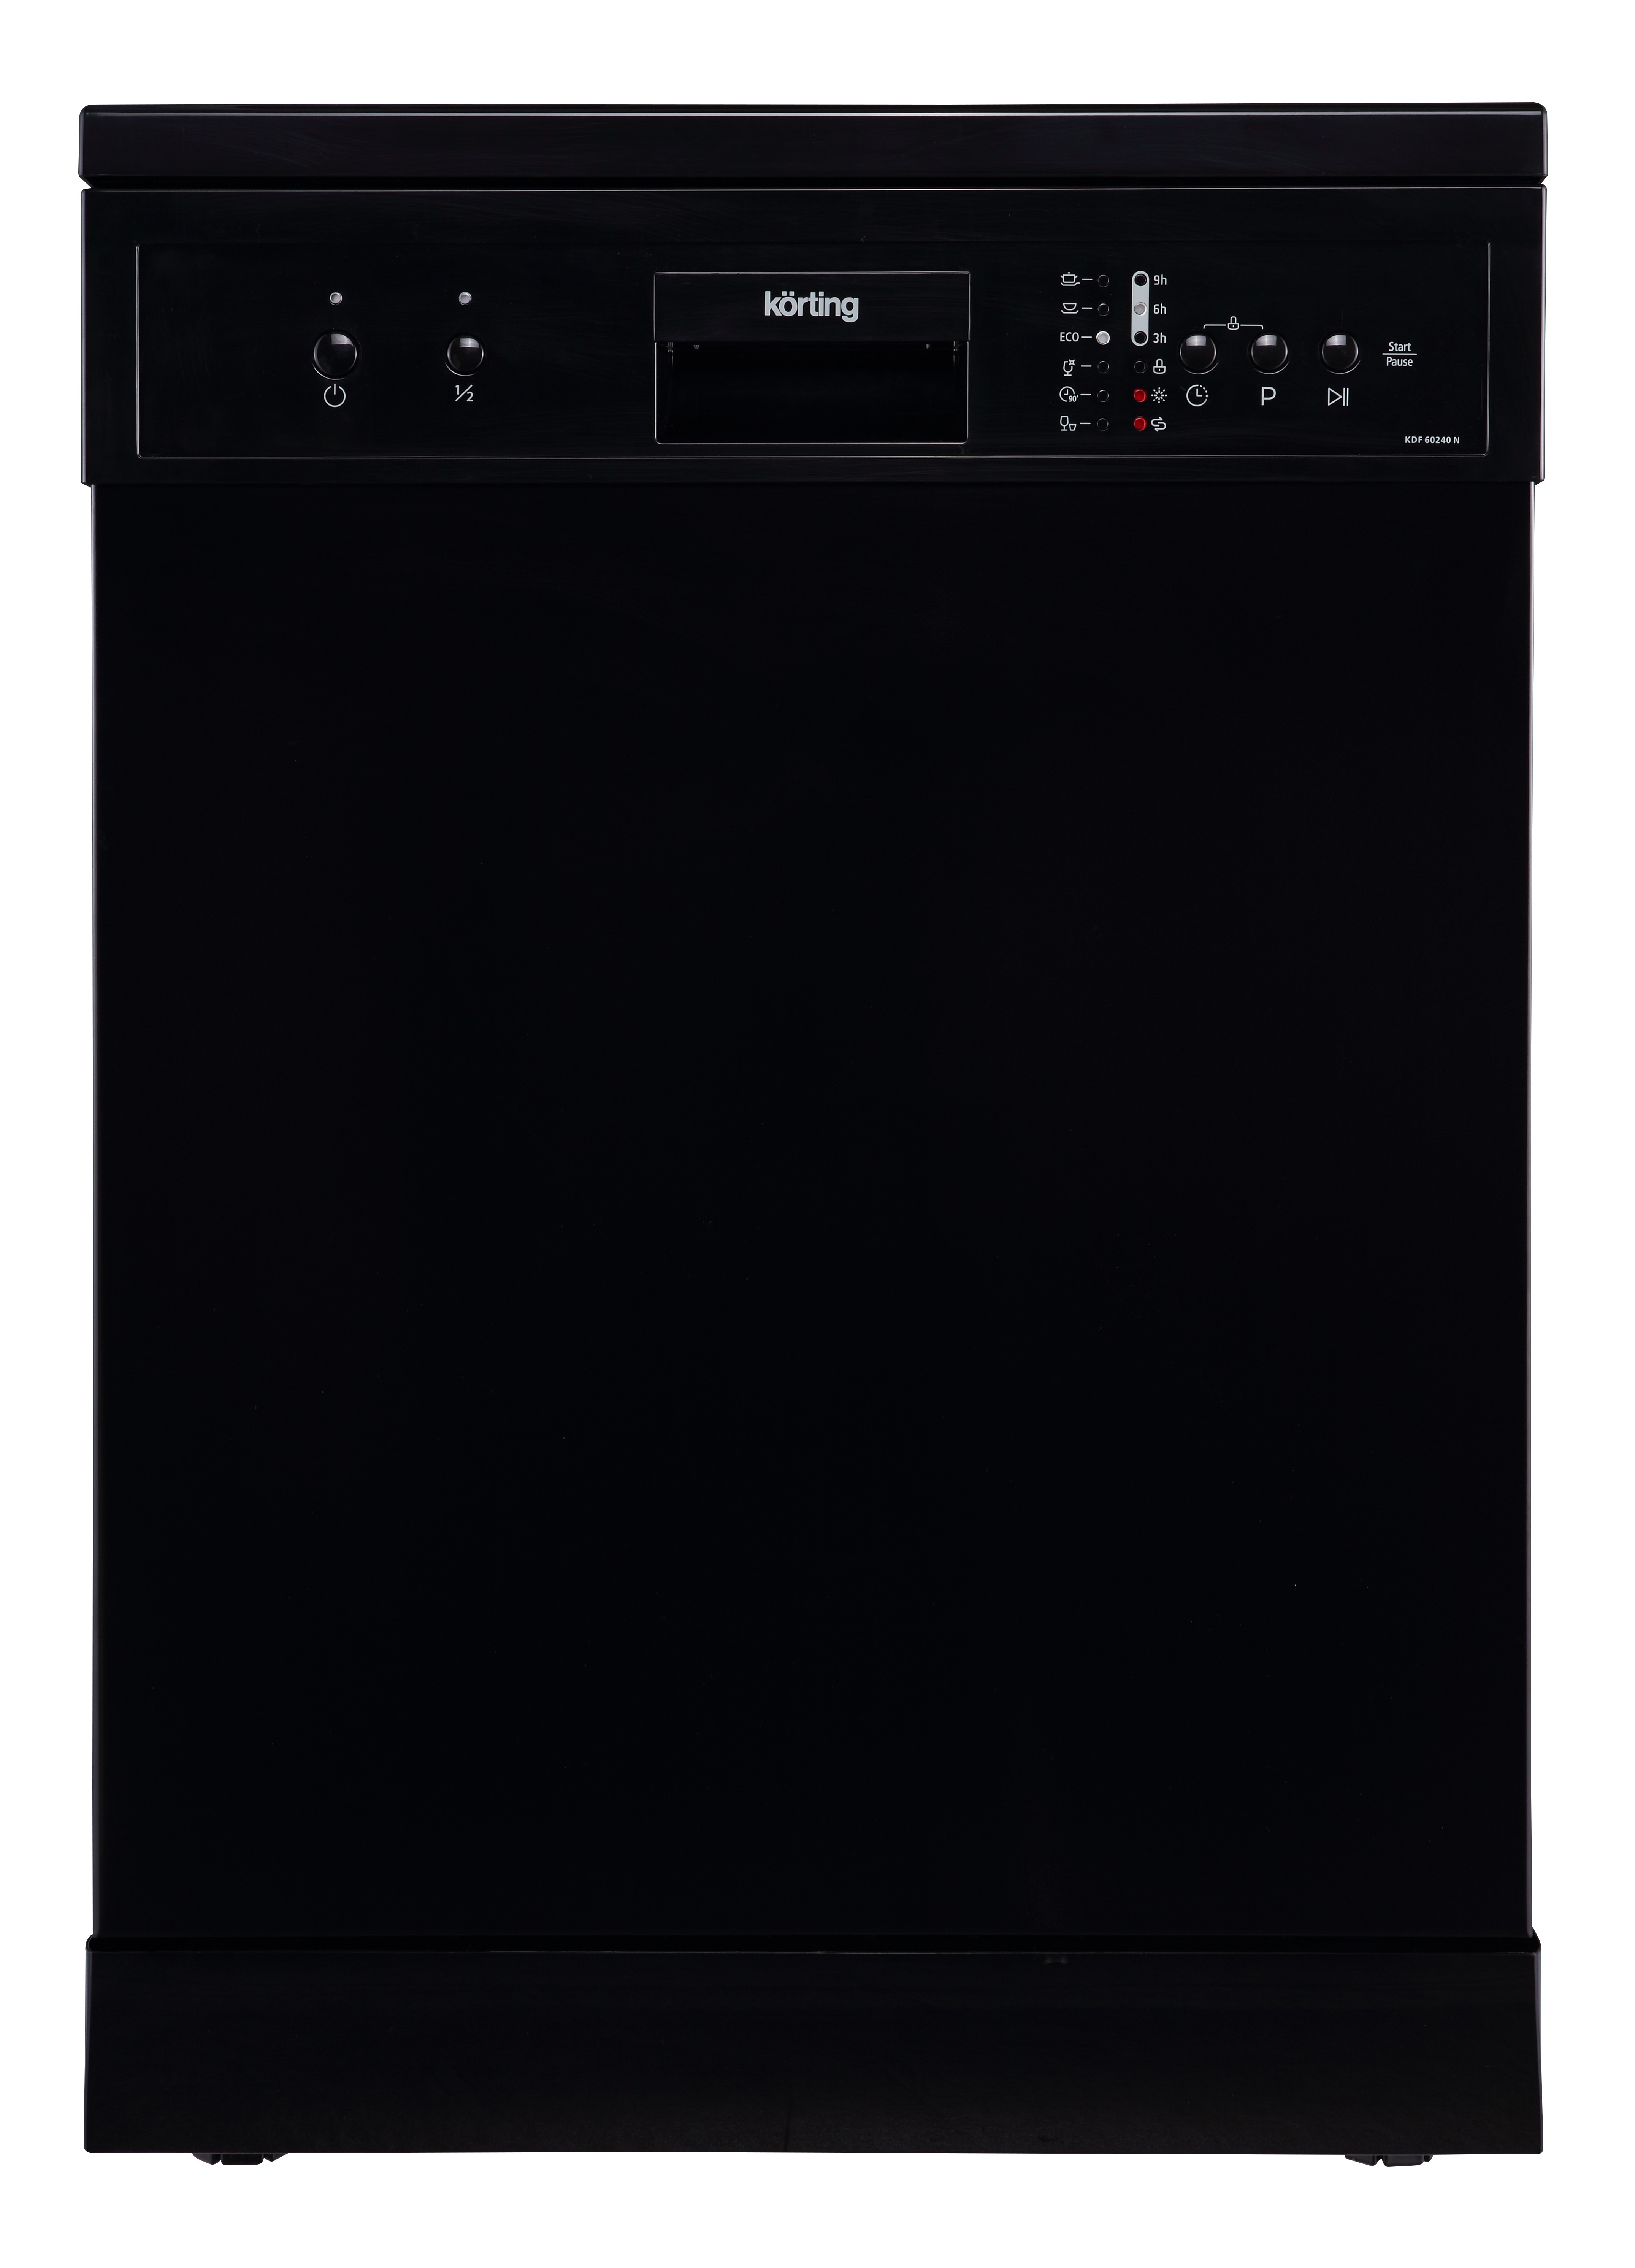 Посудомоечная машина Korting KDF 60240 N черный посудомоечная машина korting kdf 45240 n